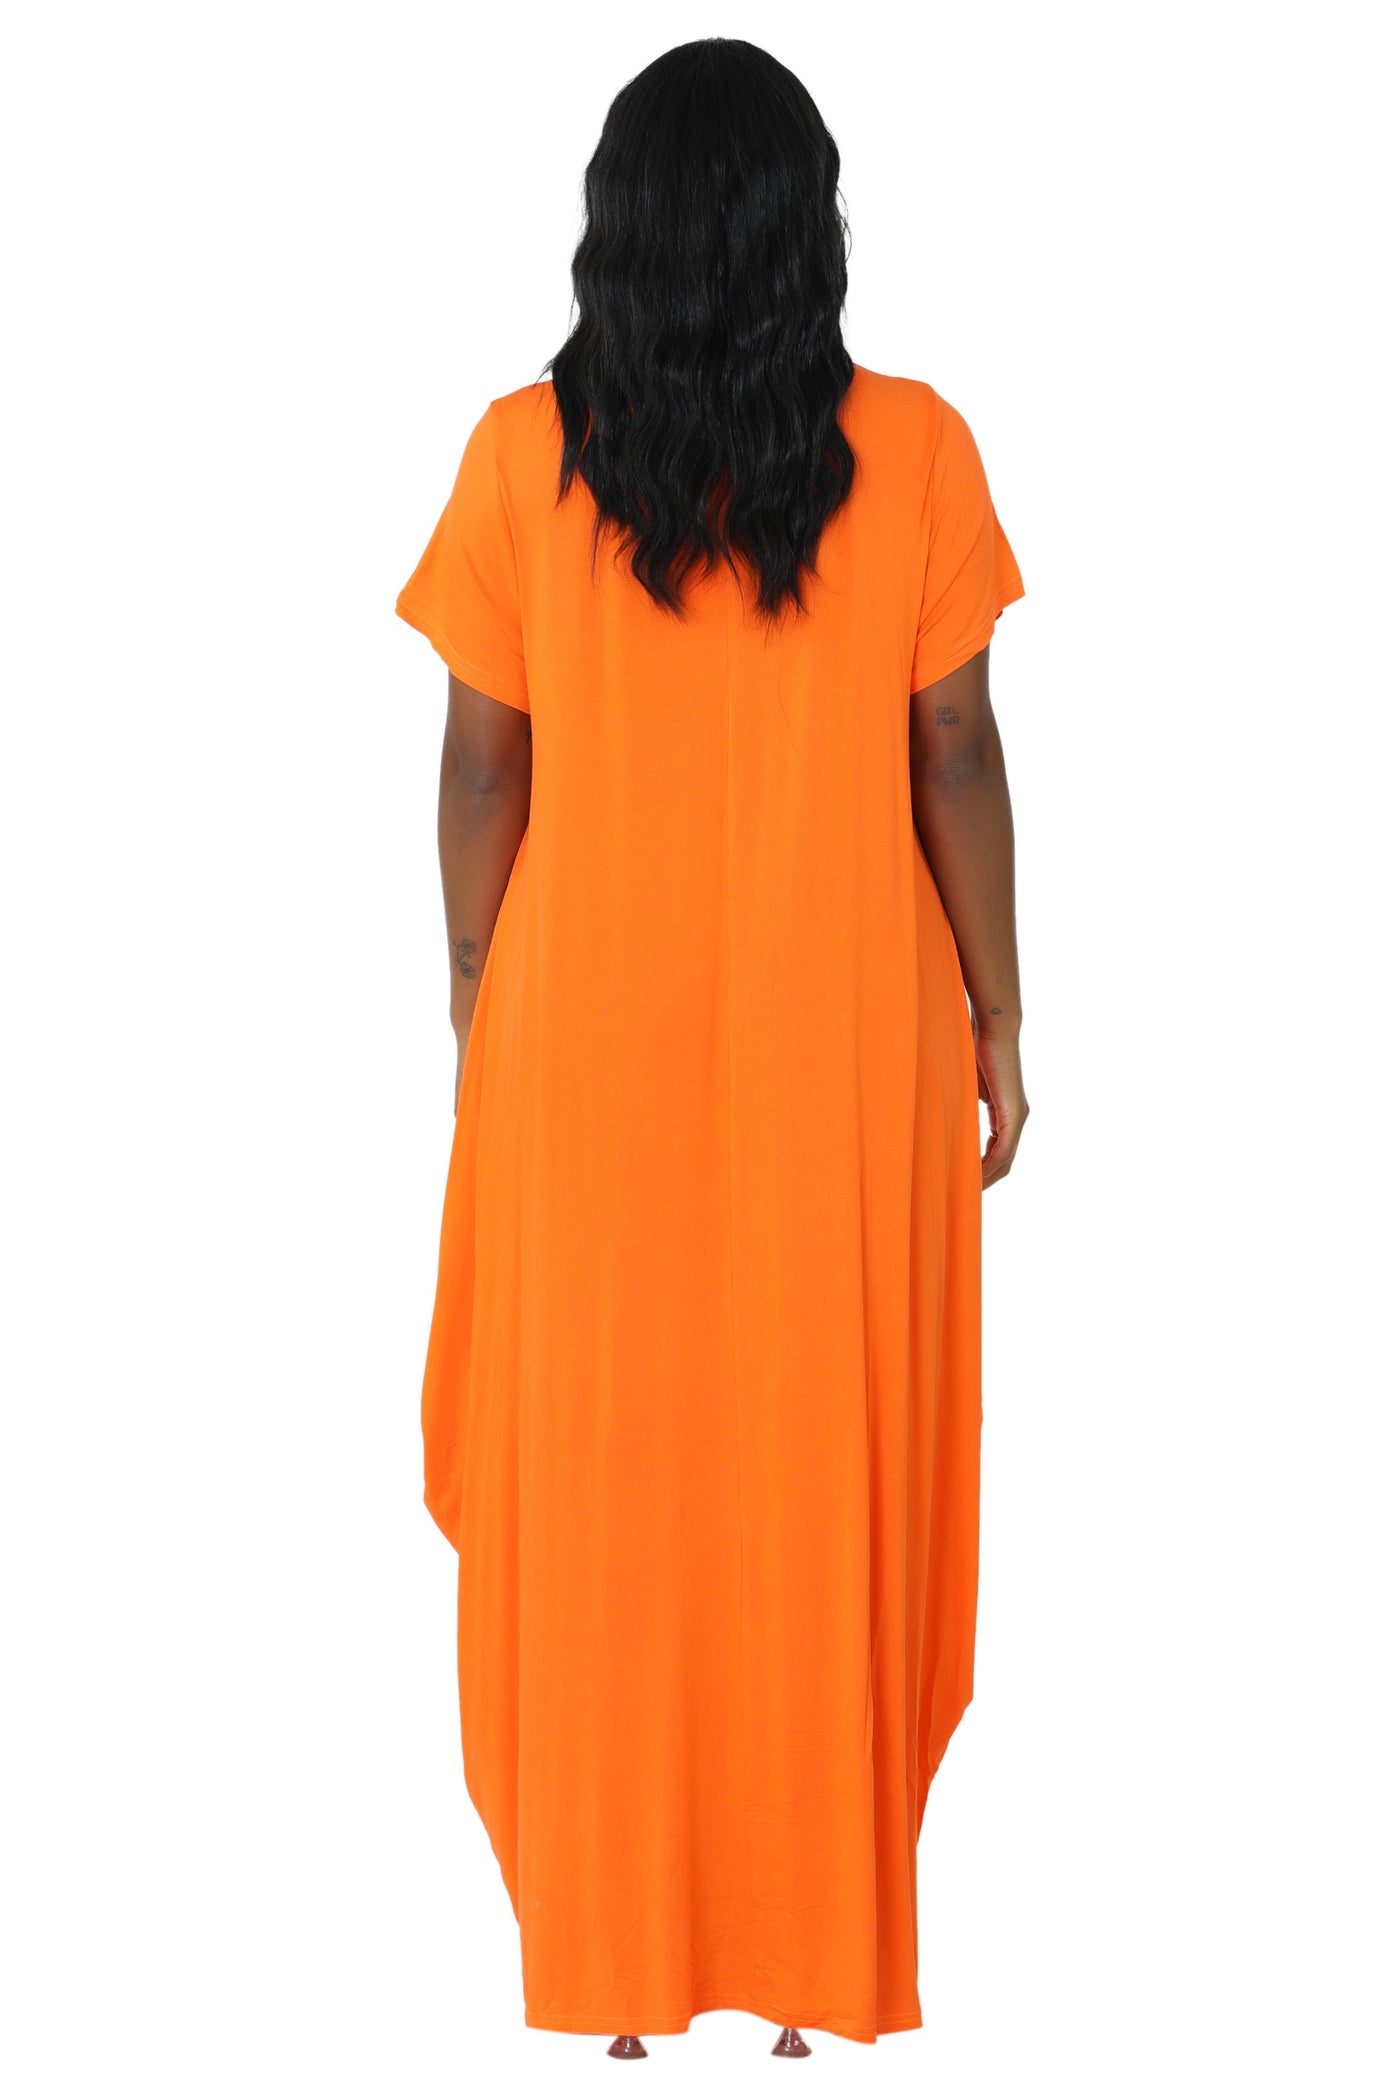 Long "Faith" Knitted Short Sleeve Dress 6666